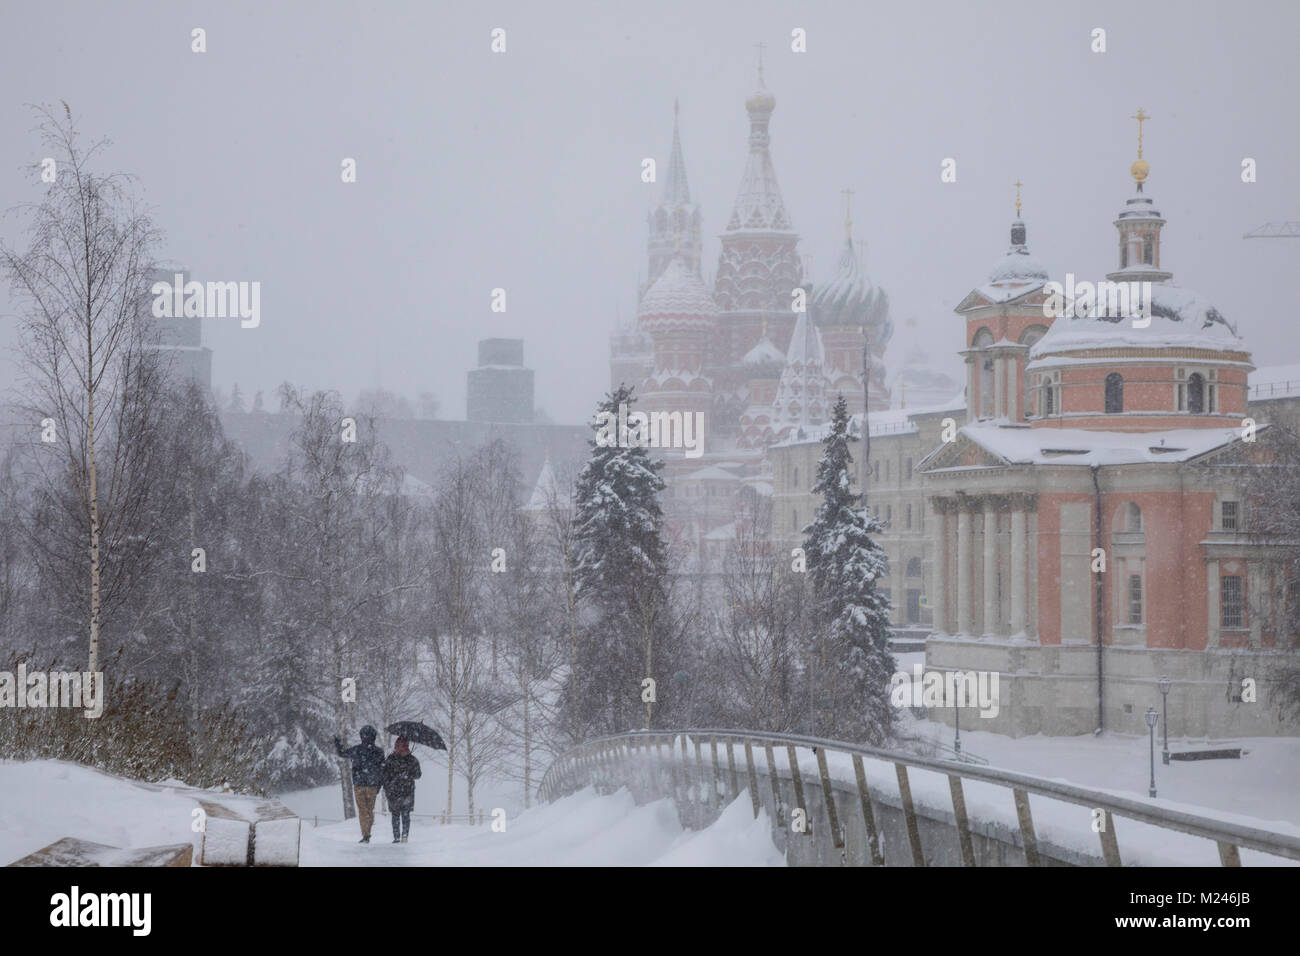 Moscou, Russie - 4 Février, 2018 : promenades dans le parc Zaryadye à Moscou pendant les fortes chutes de neige, la Russie Crédit : Nikolay Vinokourov/Alamy Live News Banque D'Images